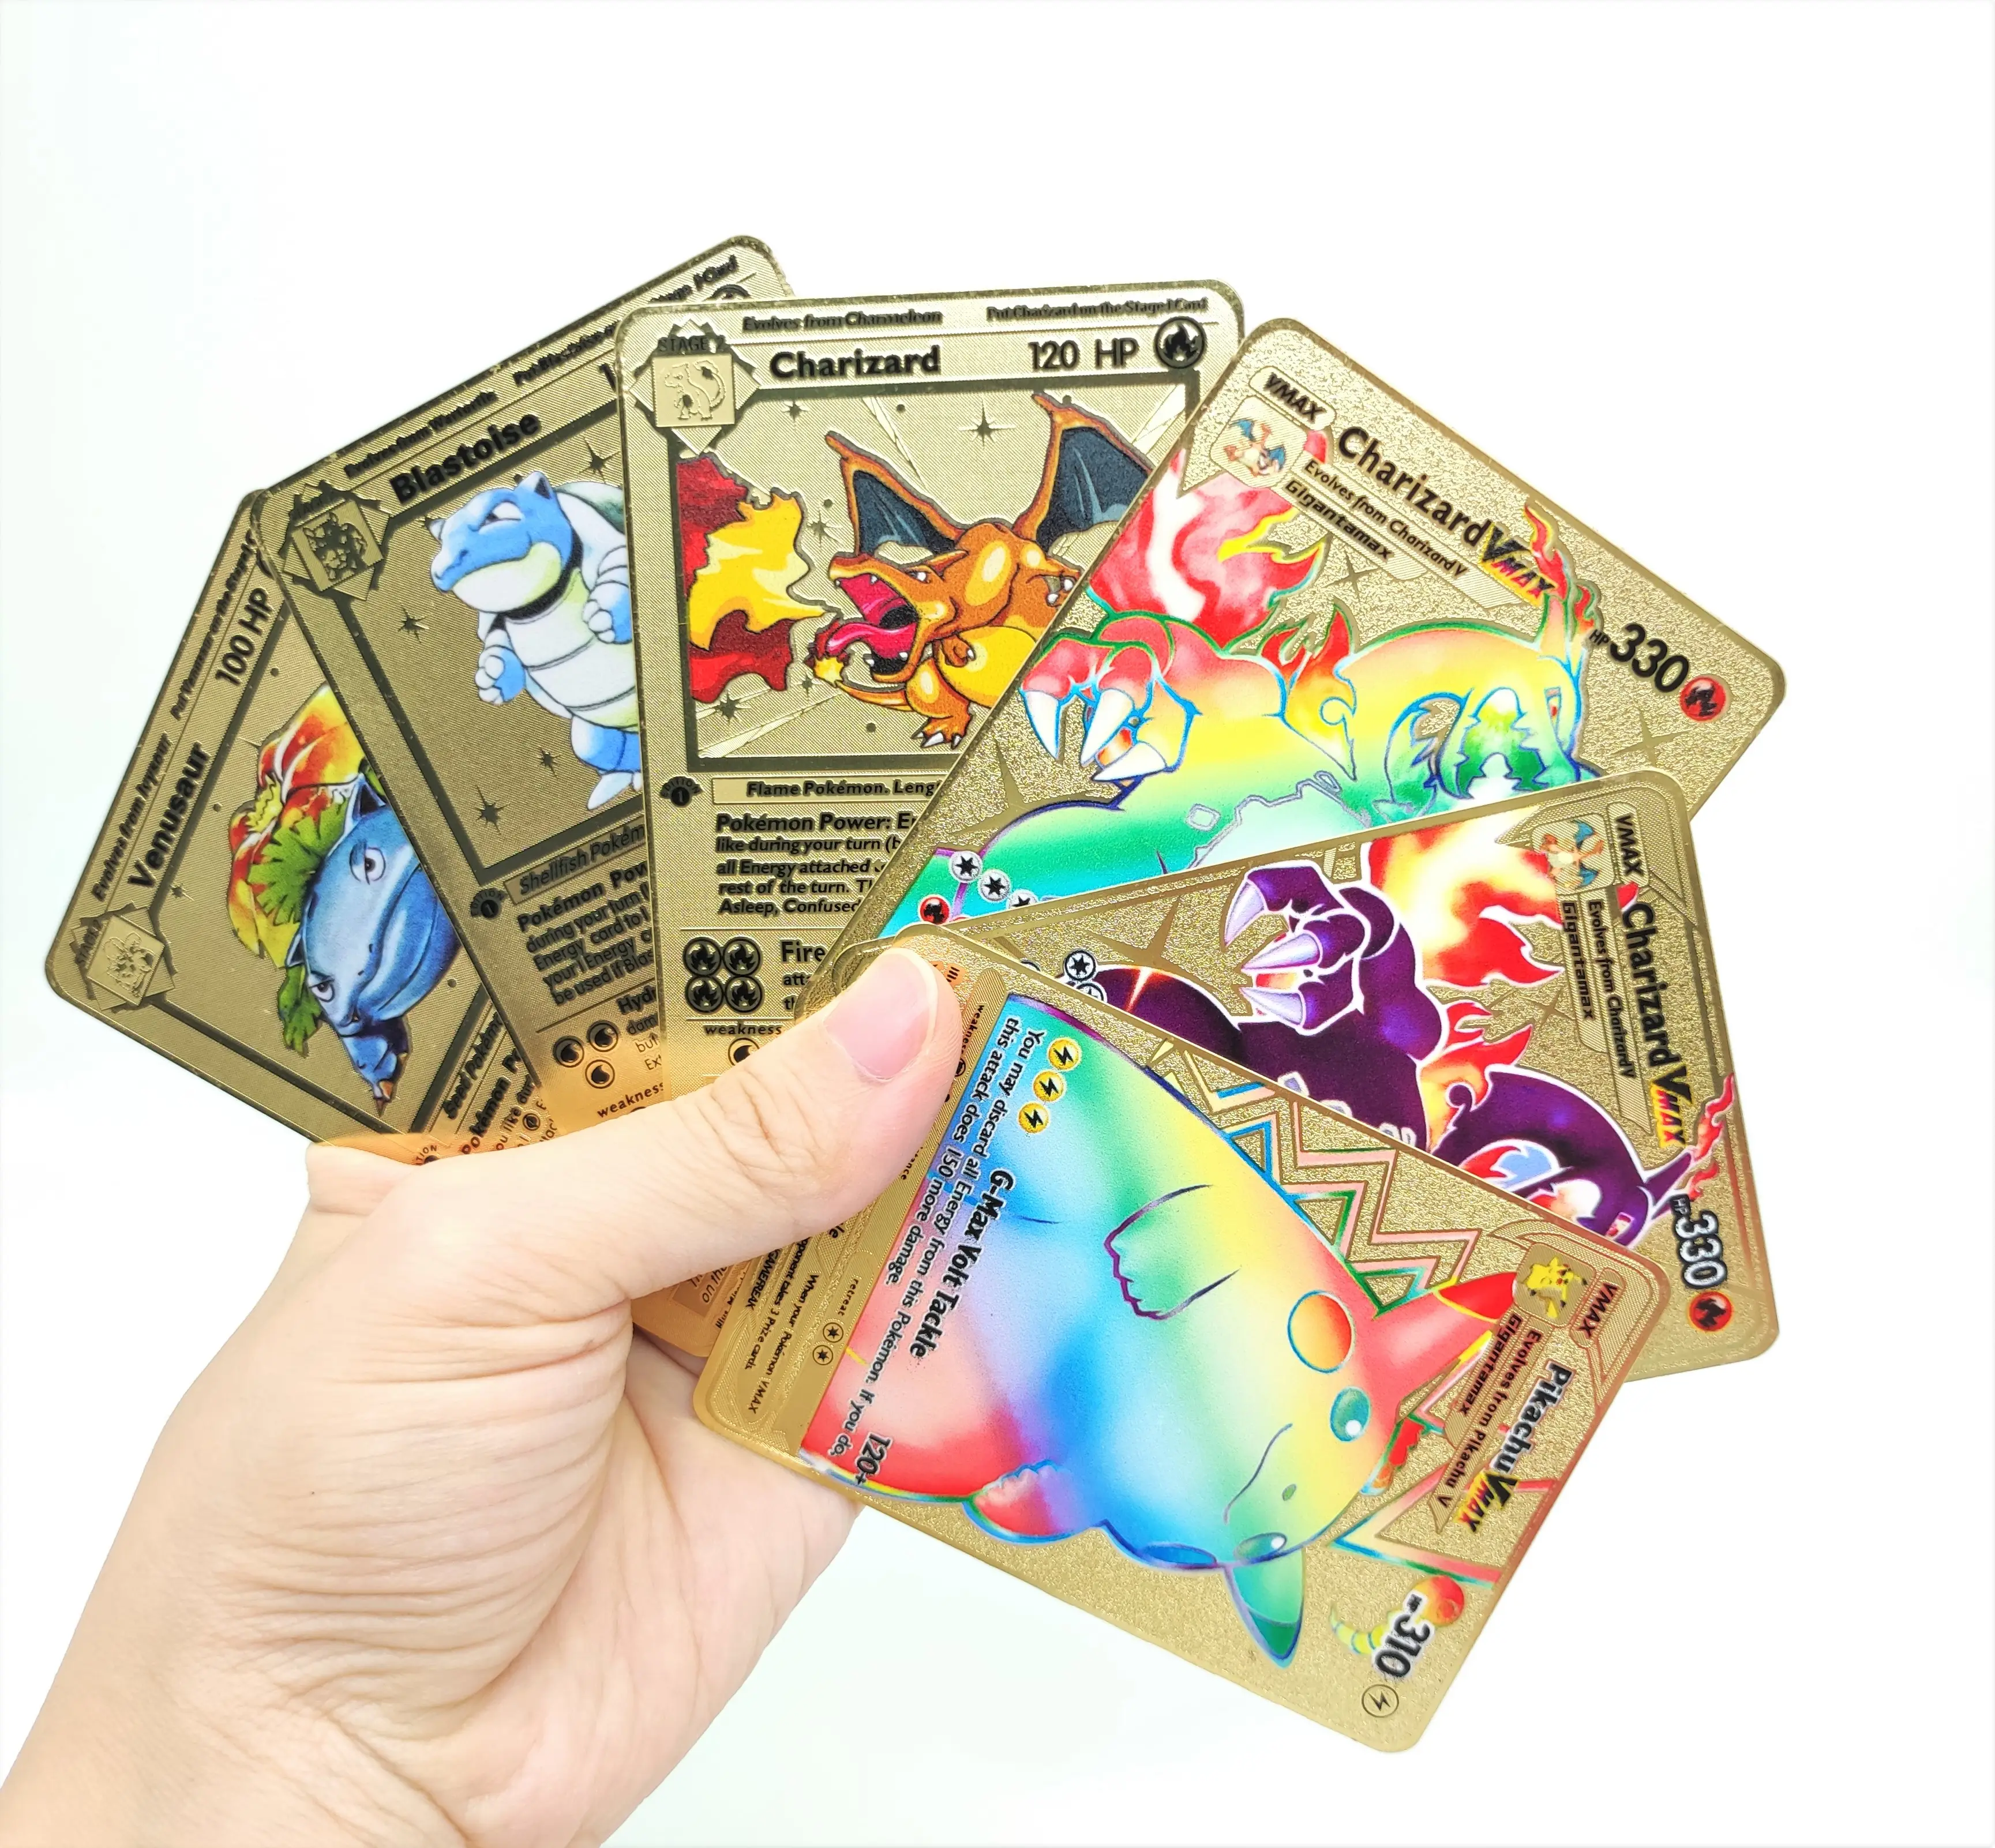 Charizard,Blast oise,Venus aur Gold Metall Pokemon Karten 1. Erstausgabe Neues Handels spielkarten spiel